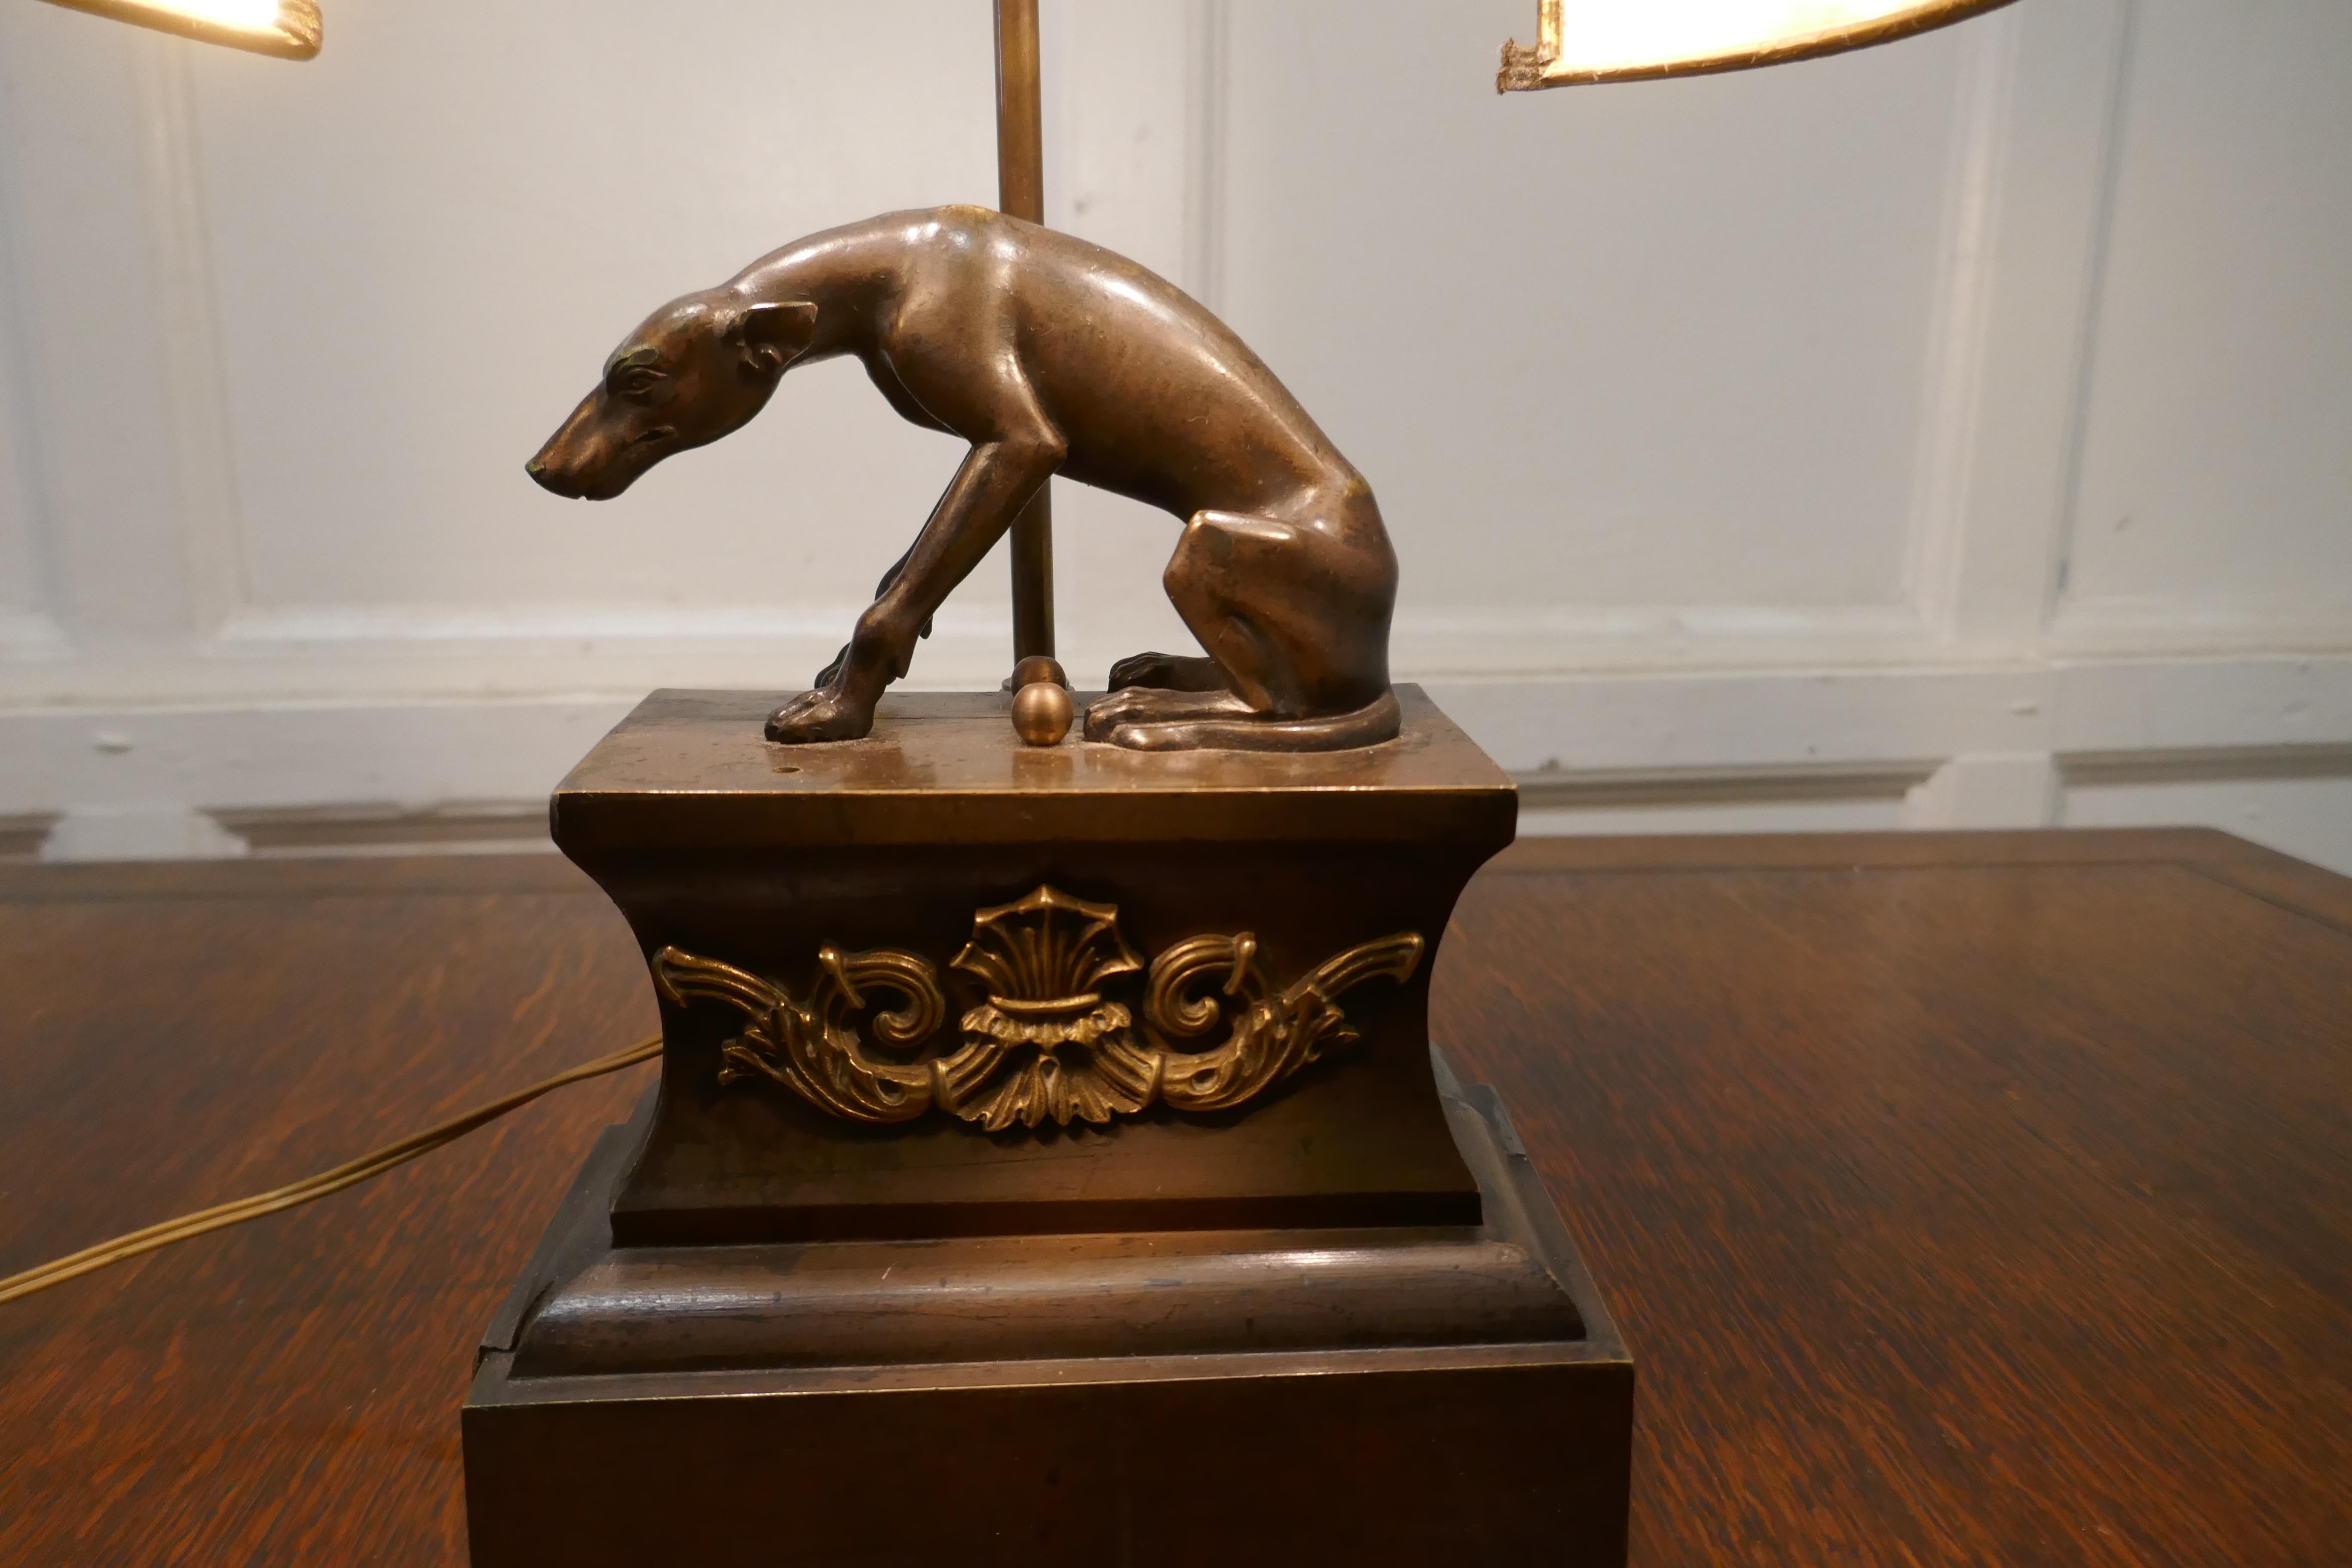 Französische Messing-Windhund-Statue Lampe

Ein hübsches Stück aus Messing und Eisen mit einer bronzierten Oberfläche für den Hund
3 Dimensional und sieht von allen Seiten toll aus, der Schirm dieser Lampe hat einen Metall-Look, es ist Pergament